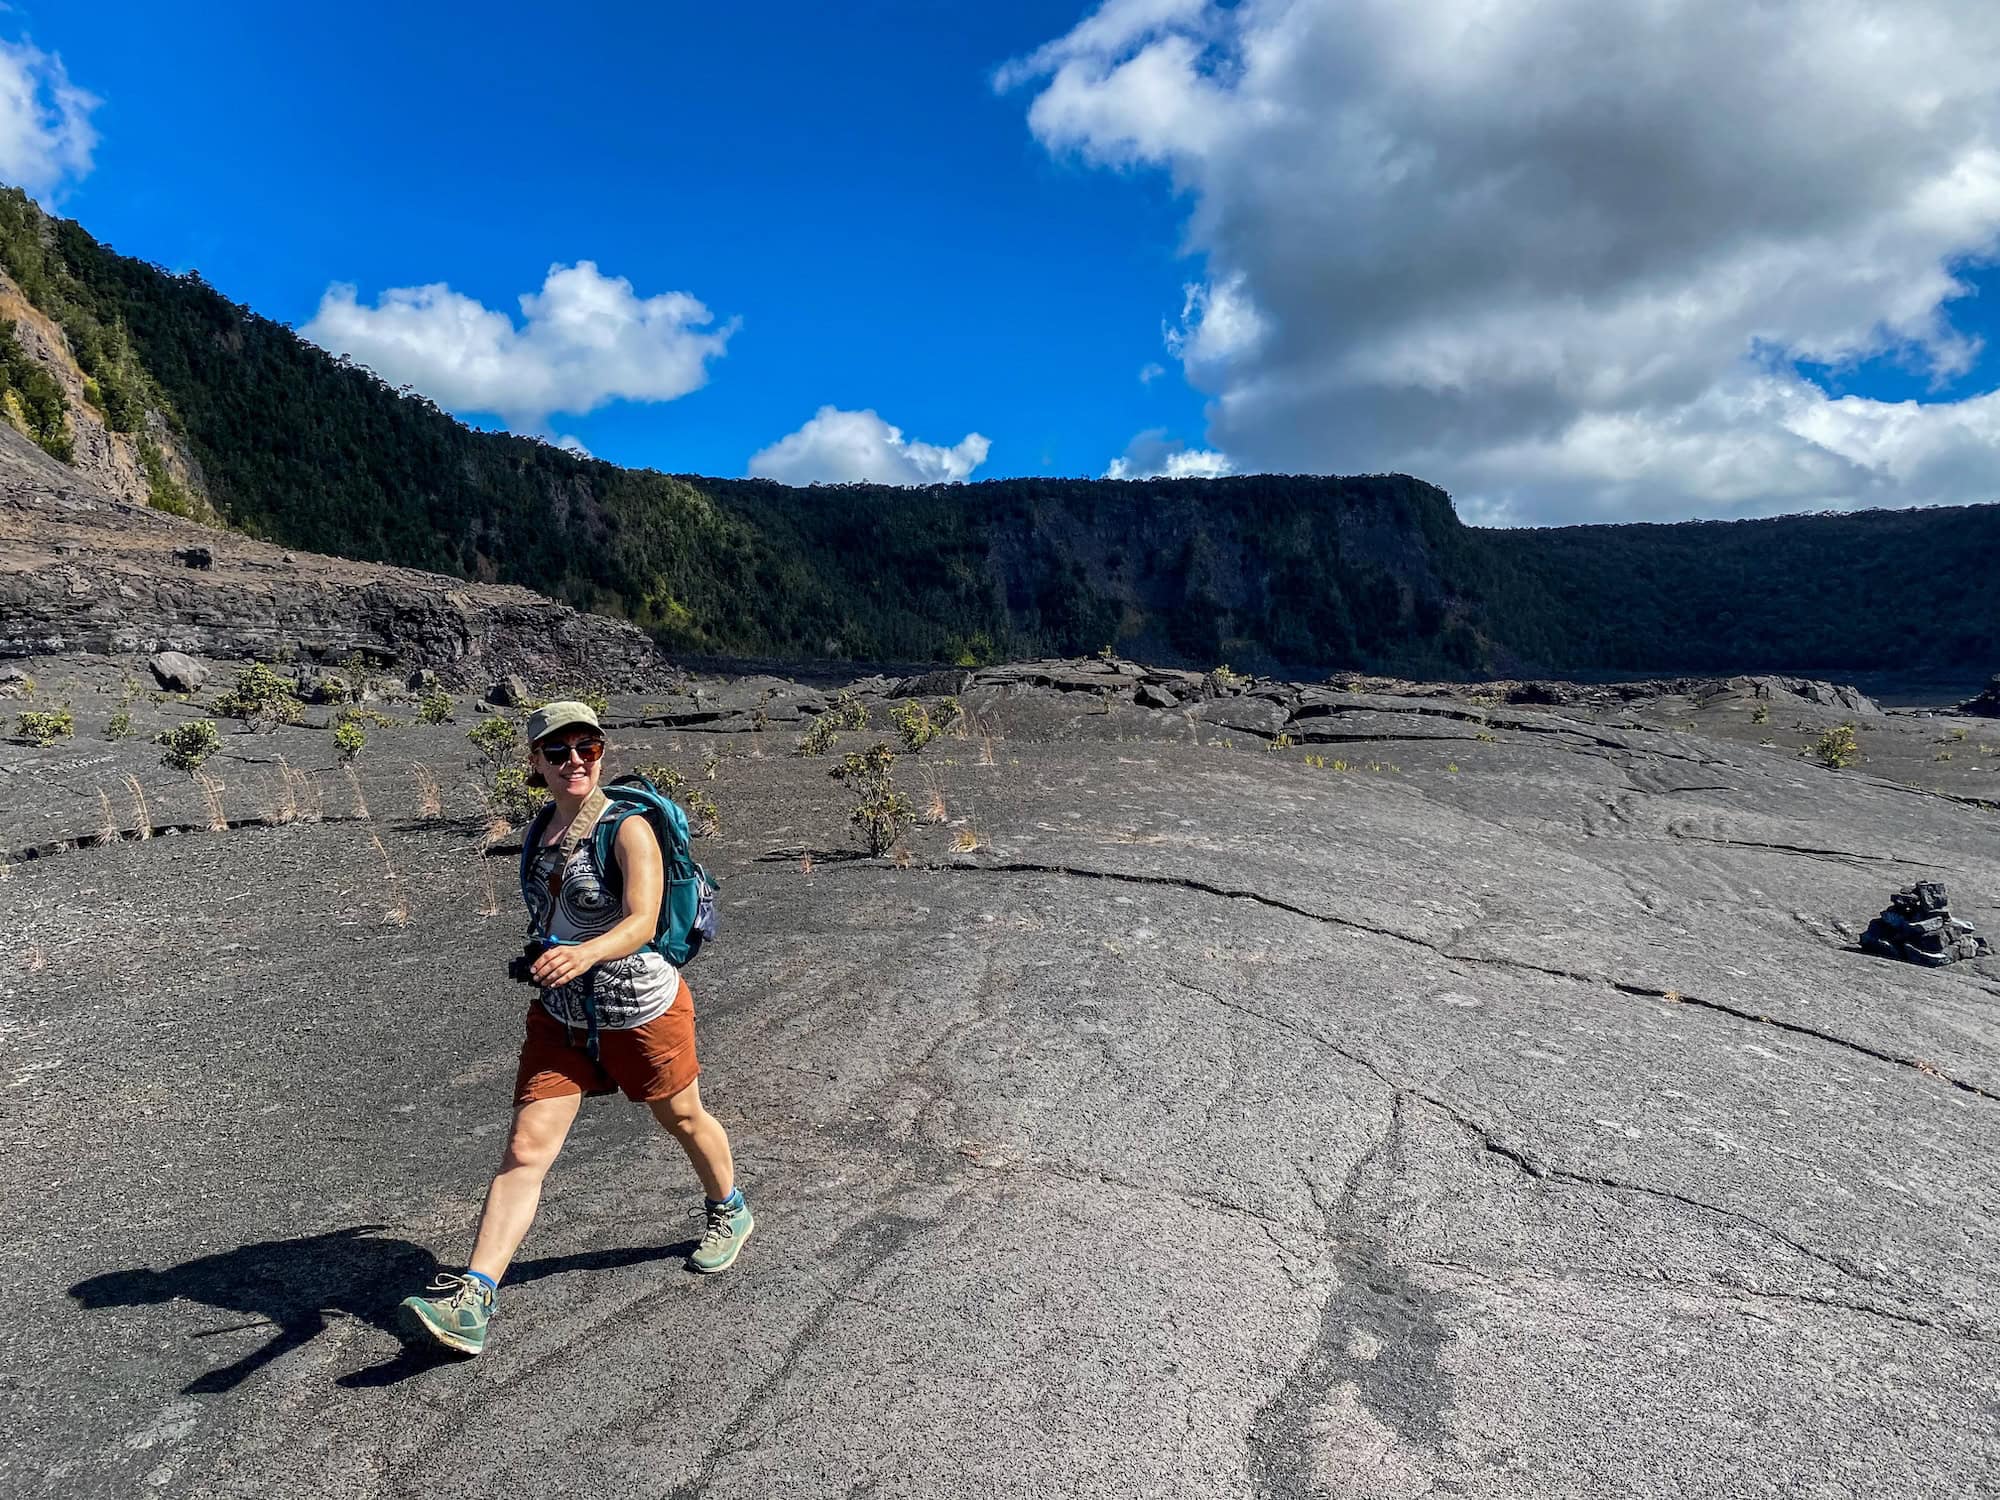 Emily on the Kilauea Iki Trail